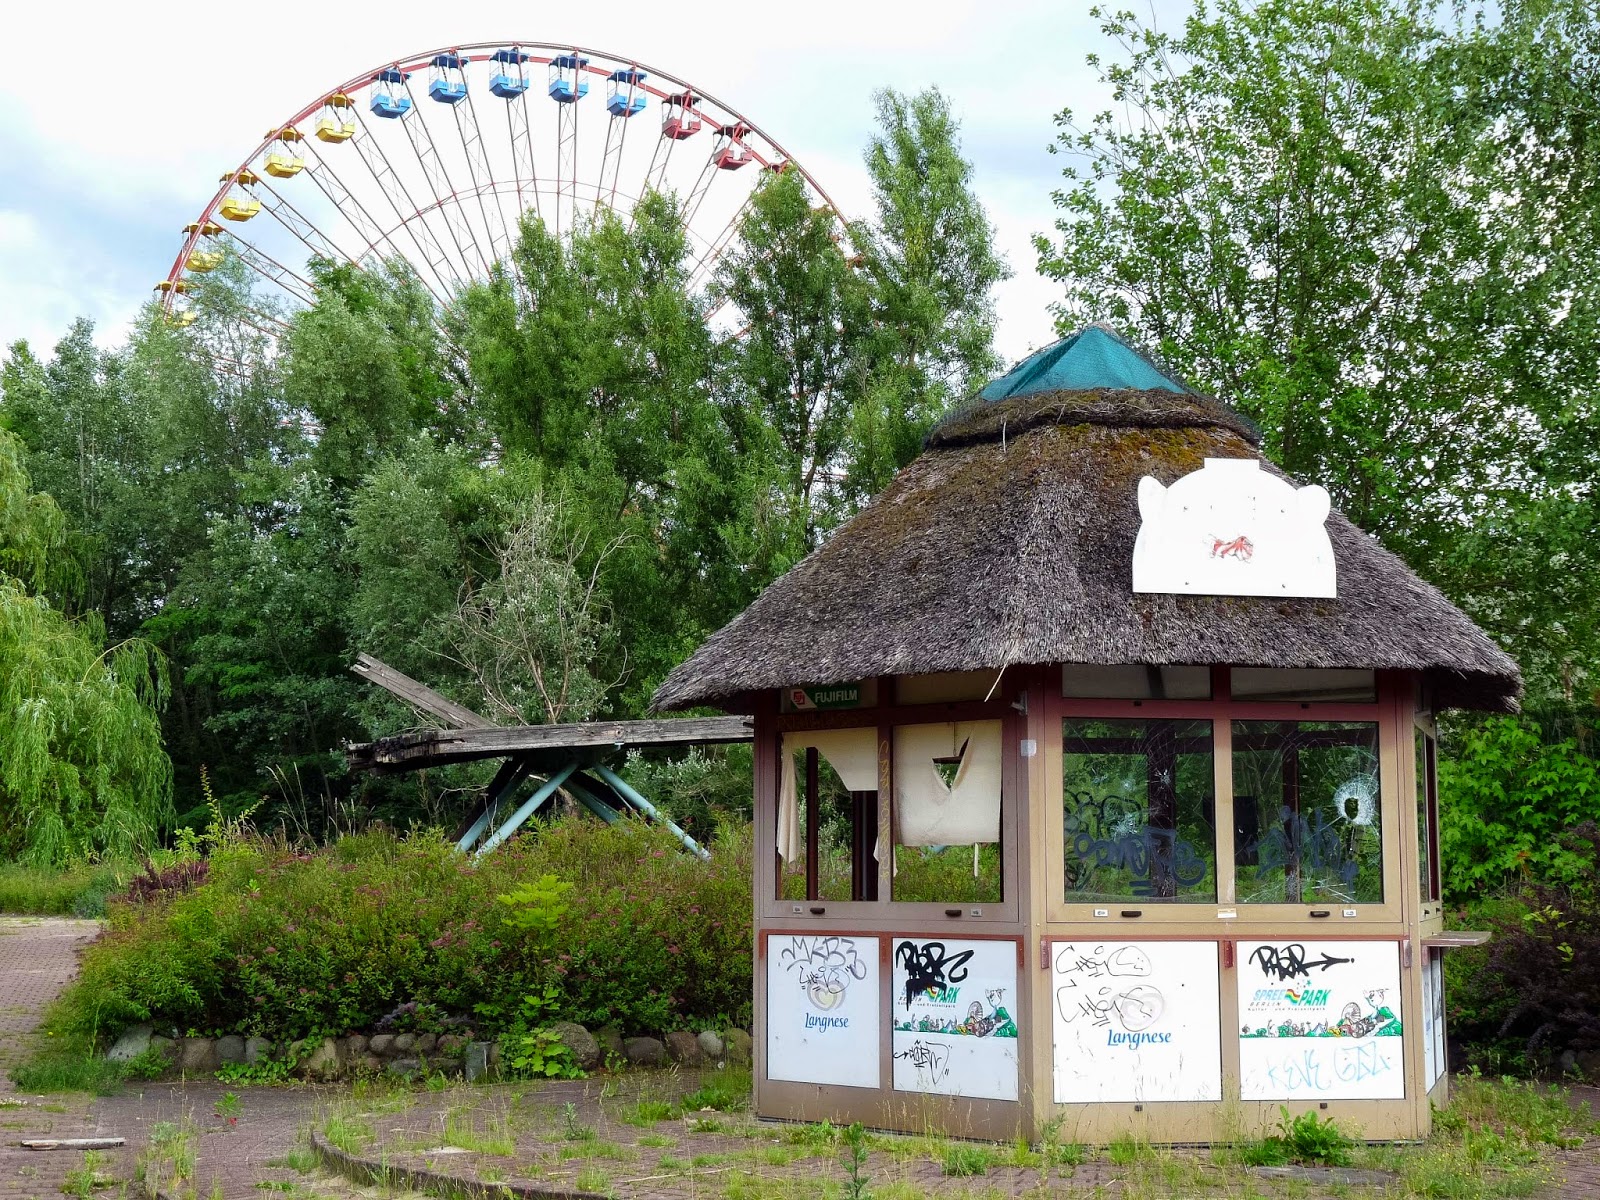 Abandoned Berlin Spreepark Amusement Fun Park-1020058